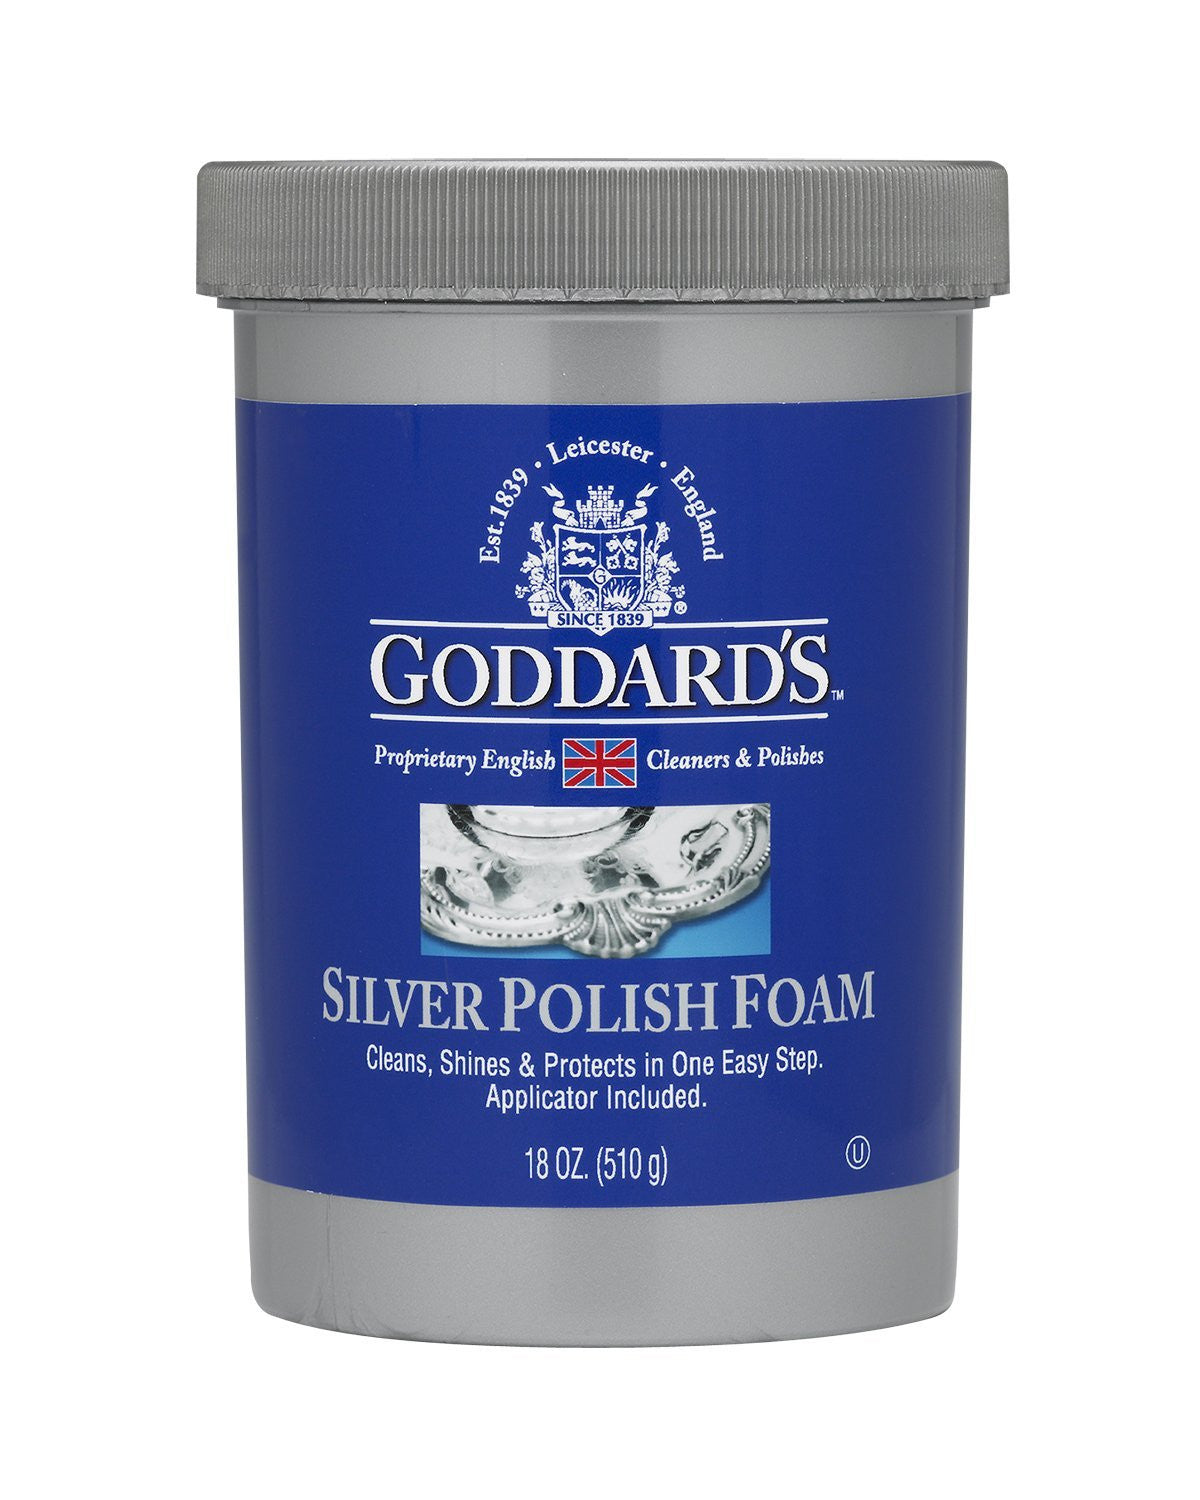 Goddard's Silver Polish Foam - 18 oz jar